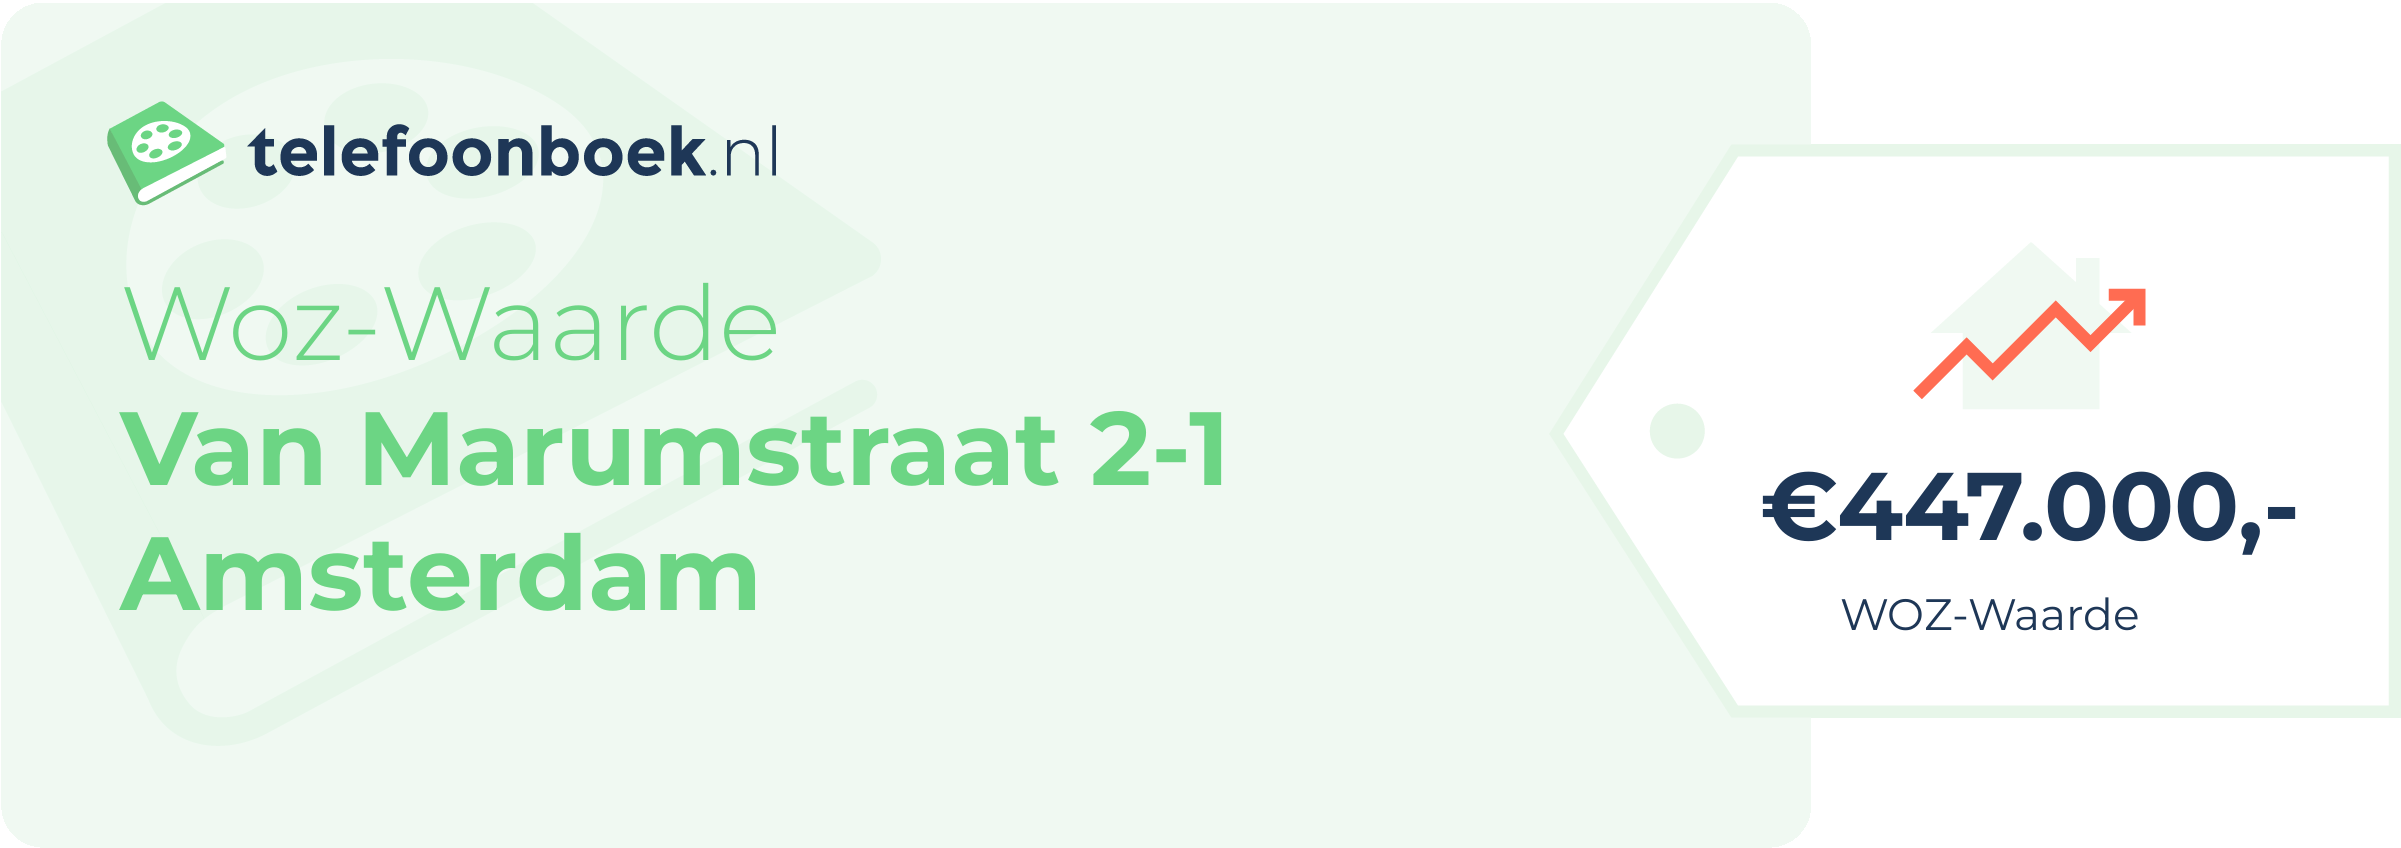 WOZ-waarde Van Marumstraat 2-1 Amsterdam